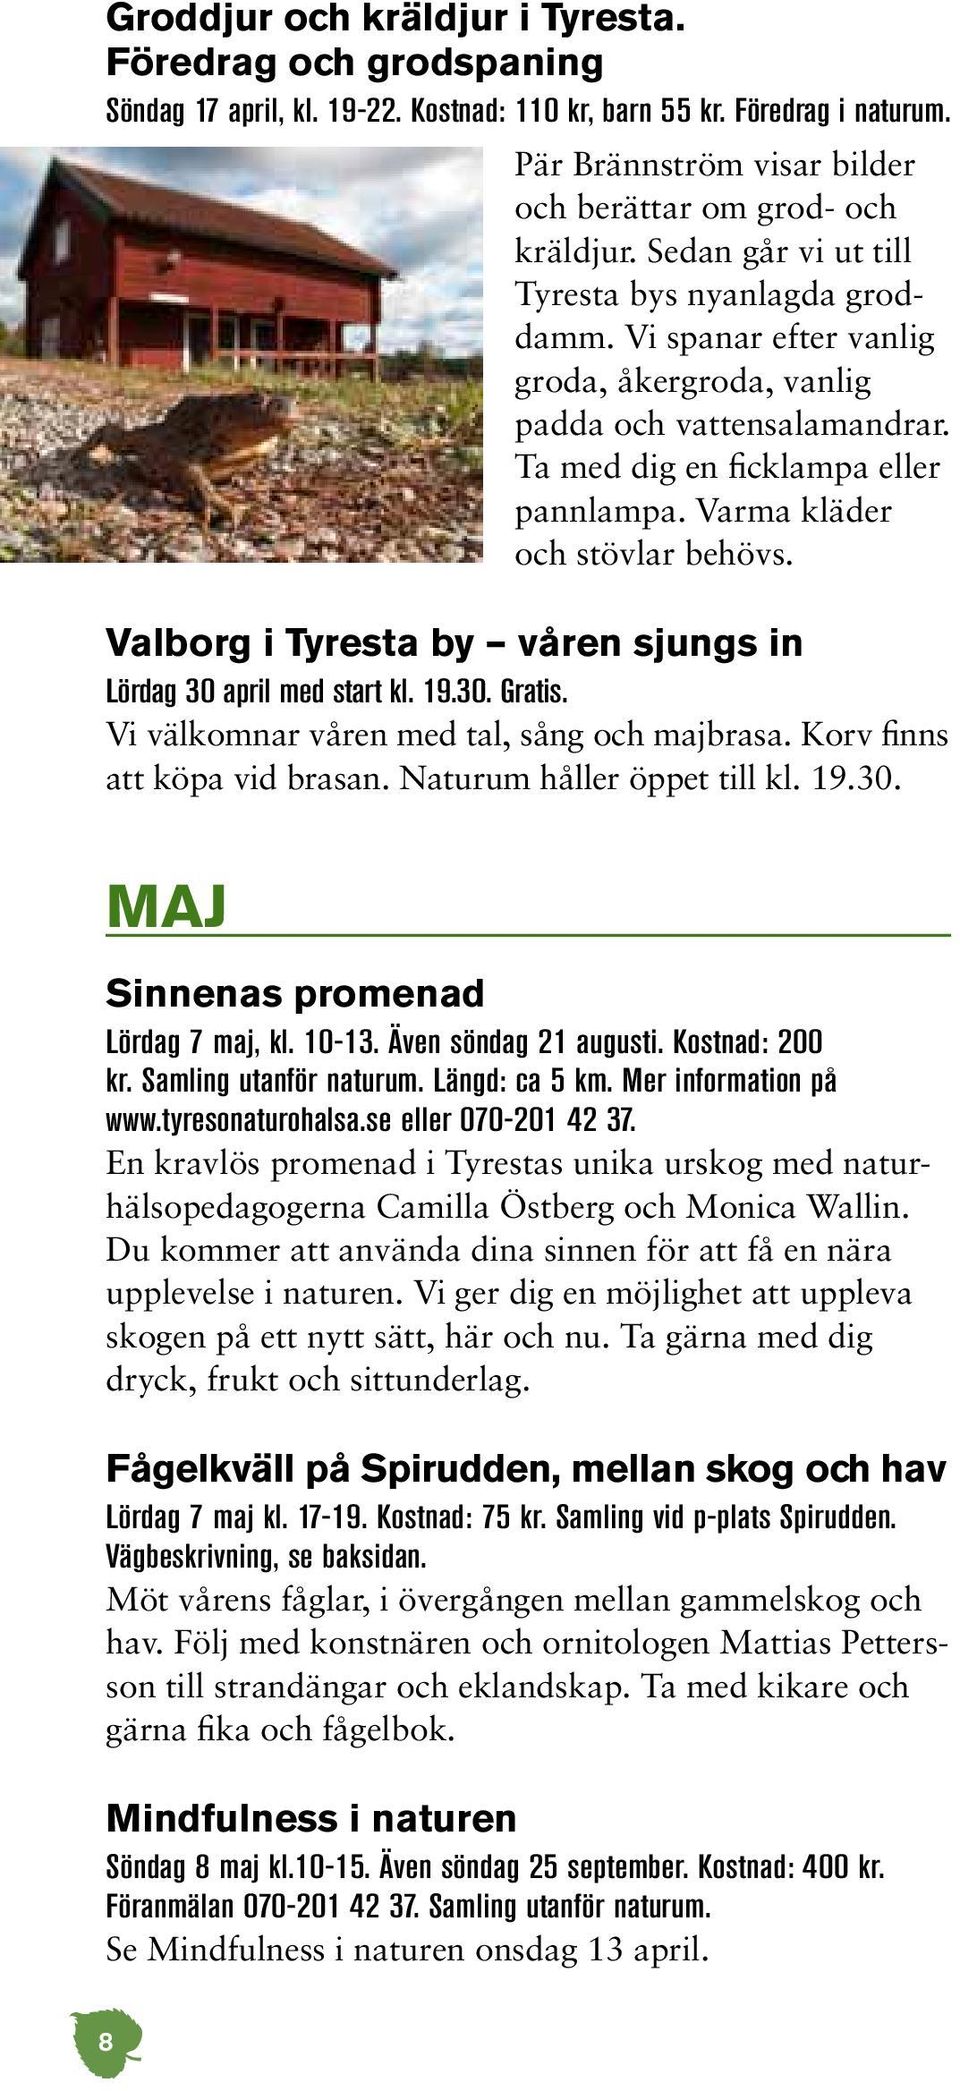 Varma kläder och stövlar behövs. Valborg i Tyresta by våren sjungs in Lördag 30 april med start kl. 19.30. Gratis. Vi välkomnar våren med tal, sång och majbrasa. Korv finns att köpa vid brasan.